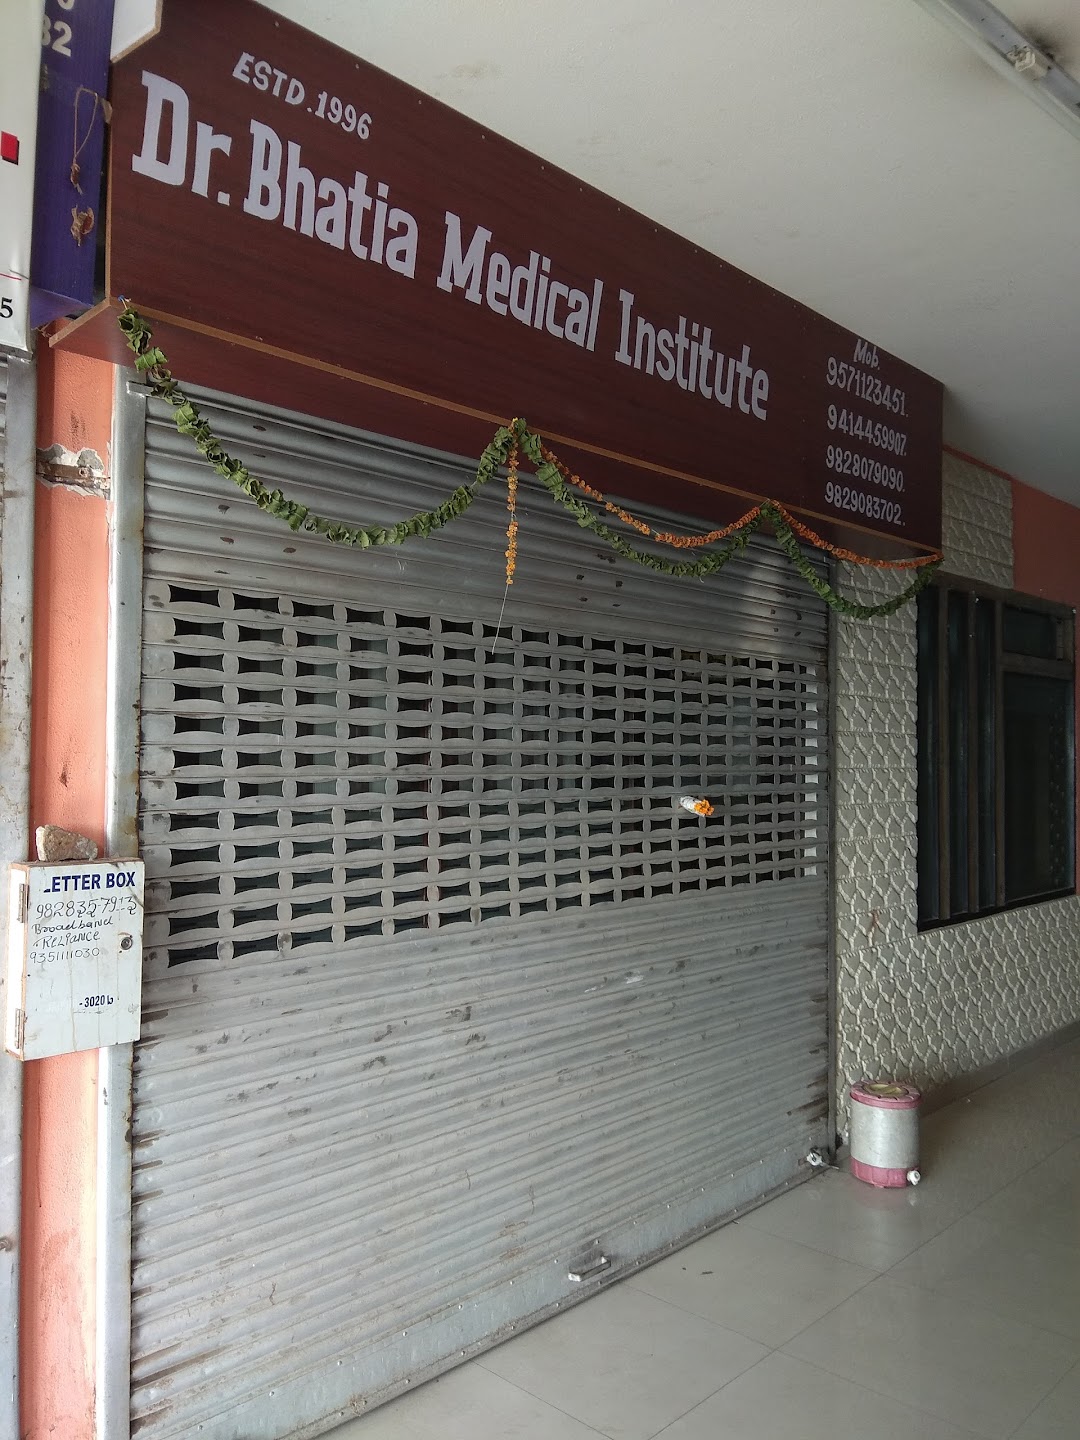 Dr Bhatia Medical Coaching Institute